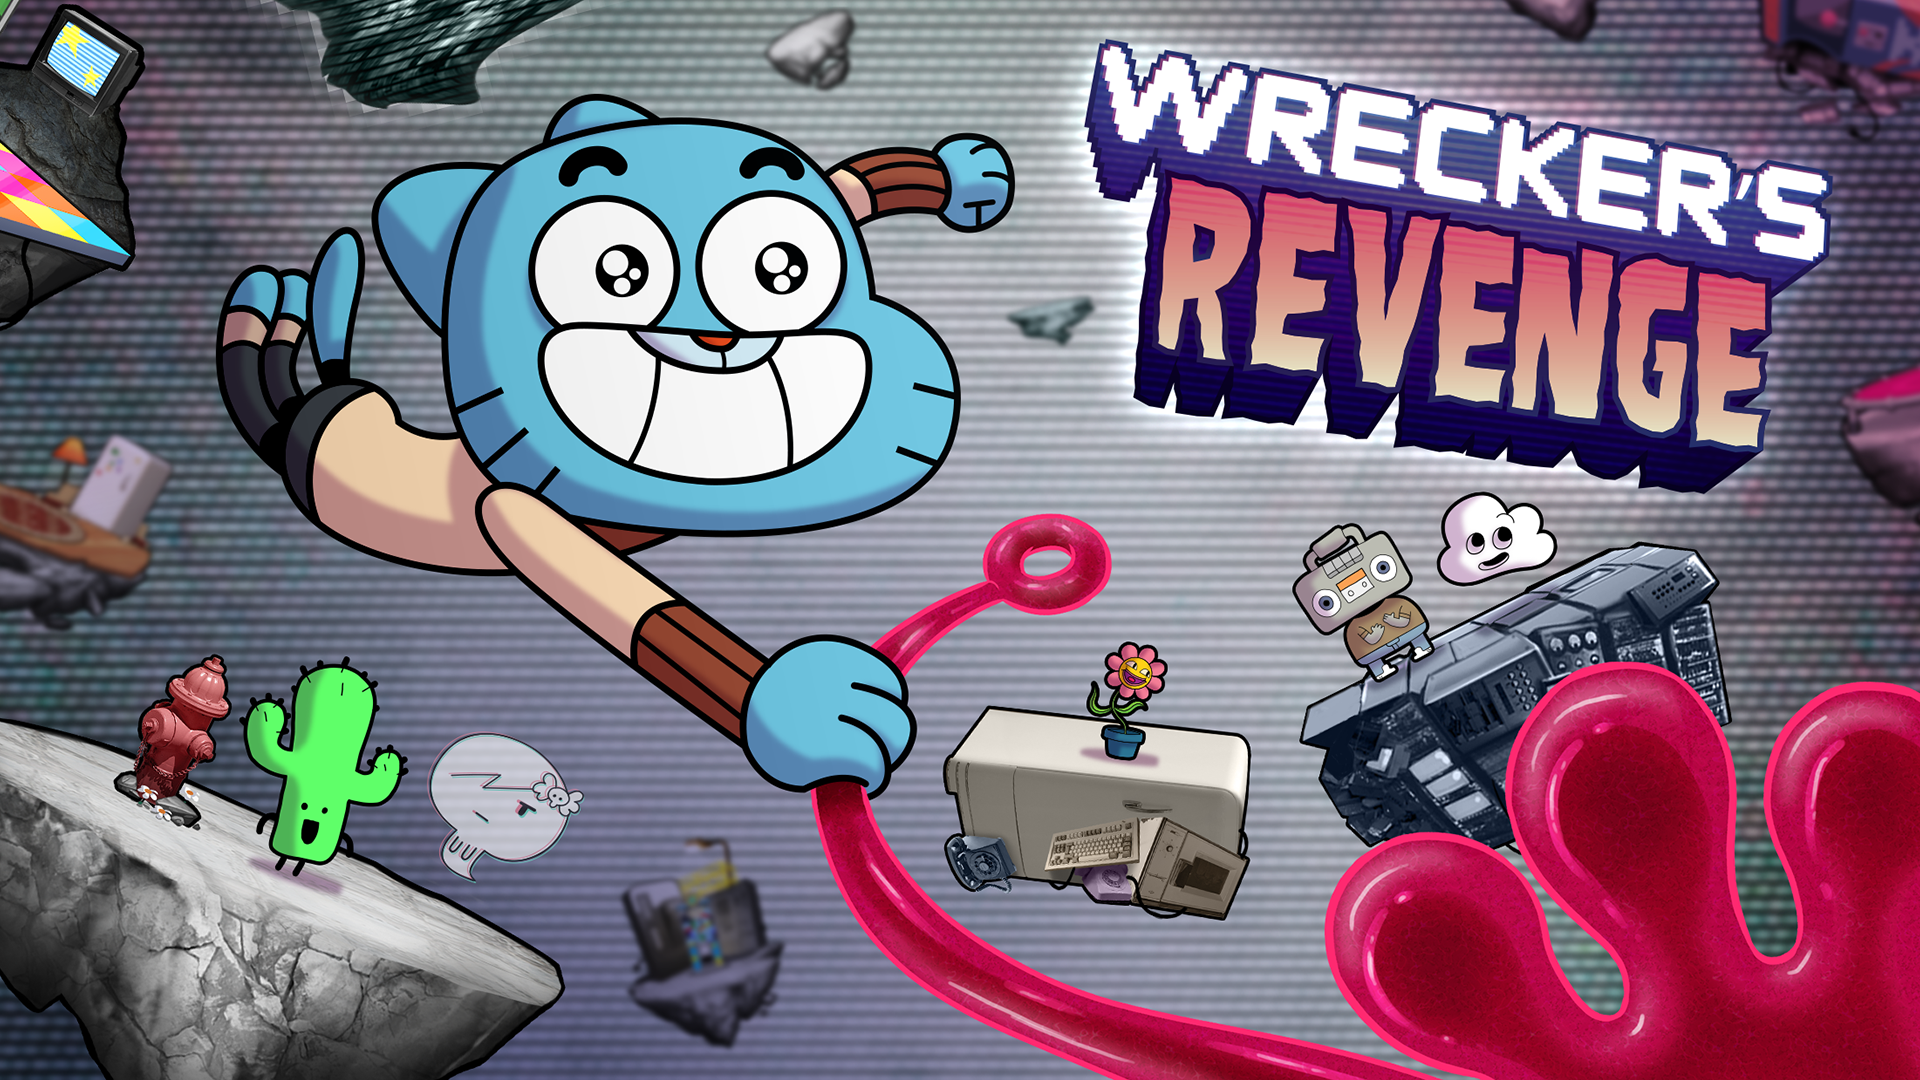 Wrecker's Revenge - Gumballのキャプチャ